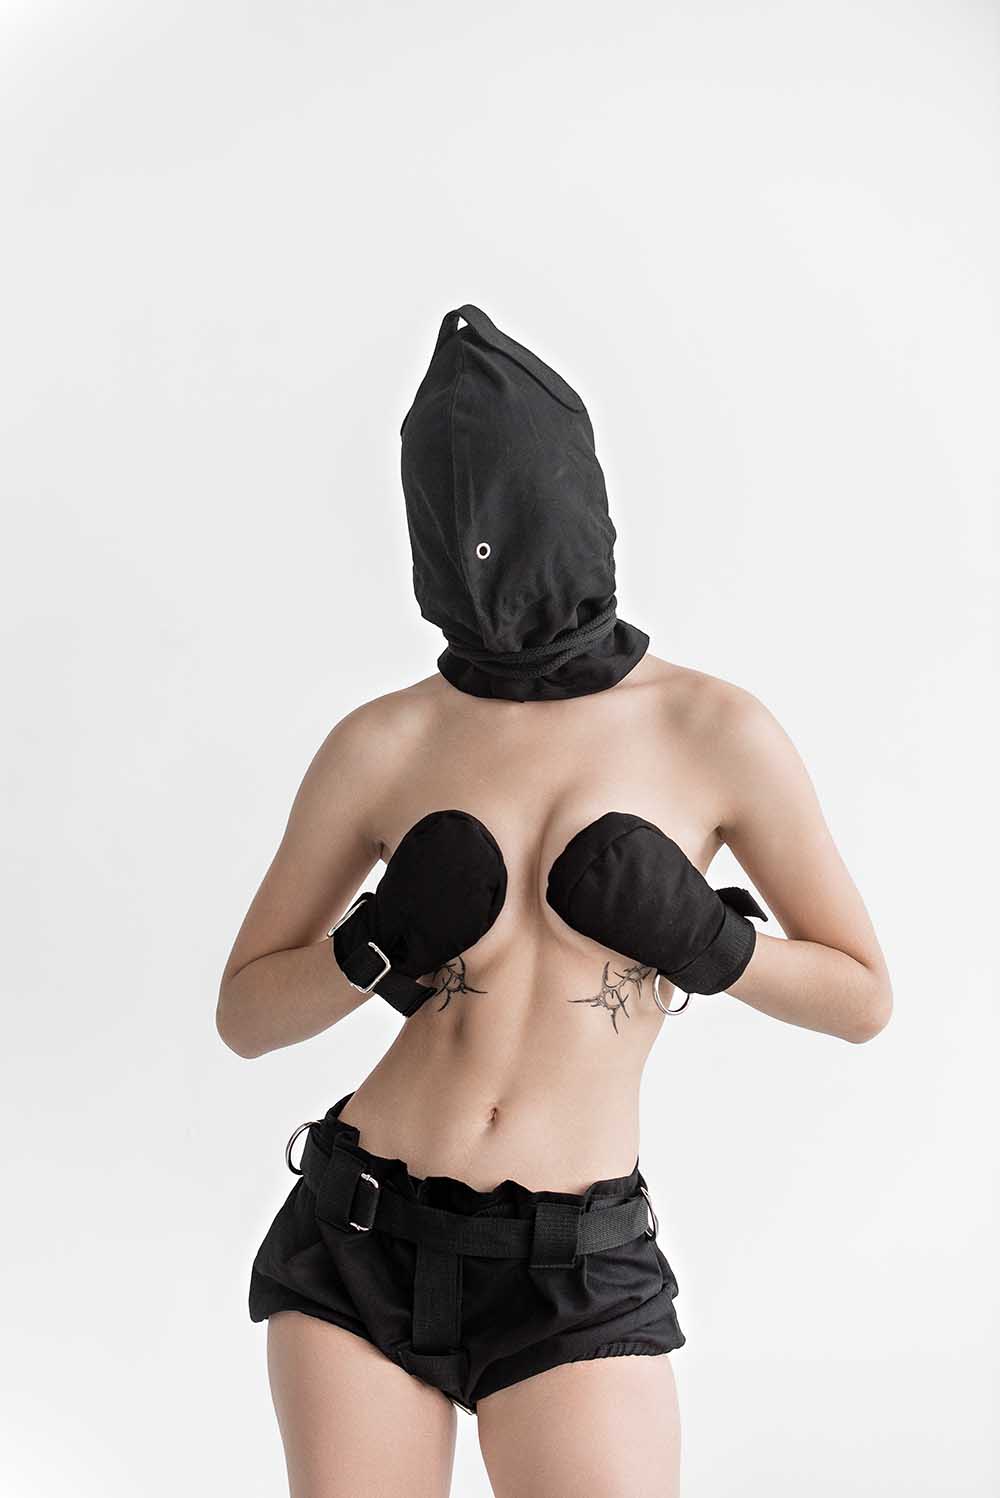 Bondage Hood, blindfold hood with holes for breathing. Black